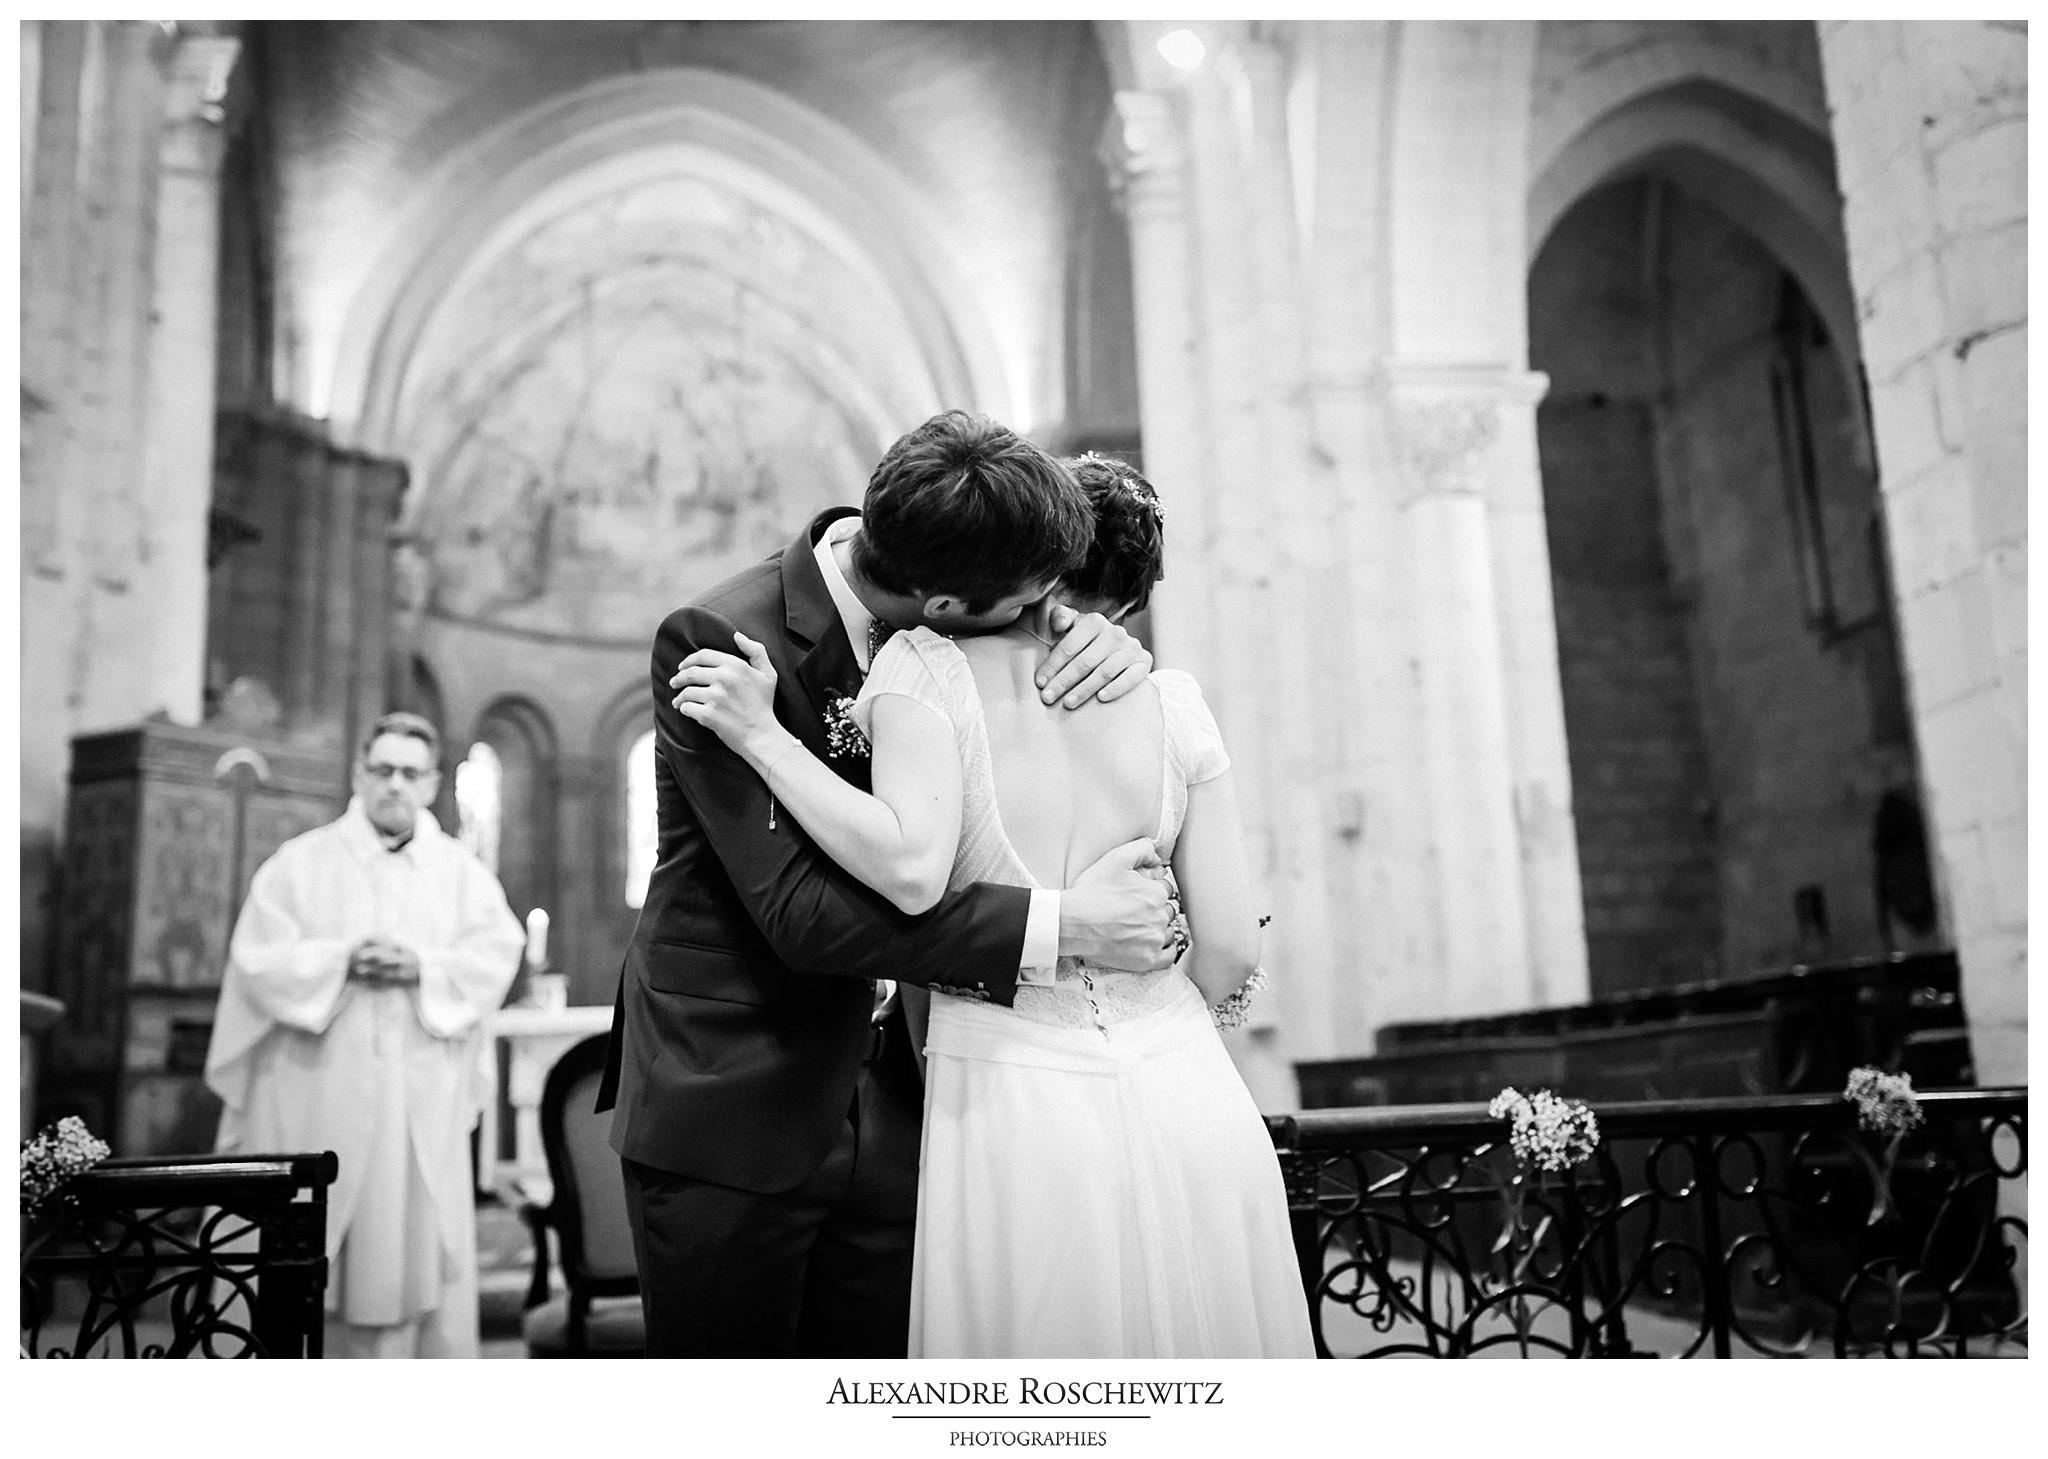 Photos du mariage de Soline et Quentin en Dordogne, aux Eysies de Tayac, à l'Abbaye de Cadouin et au Château de la Bourlie. Alexandre Roschewitz Photographies